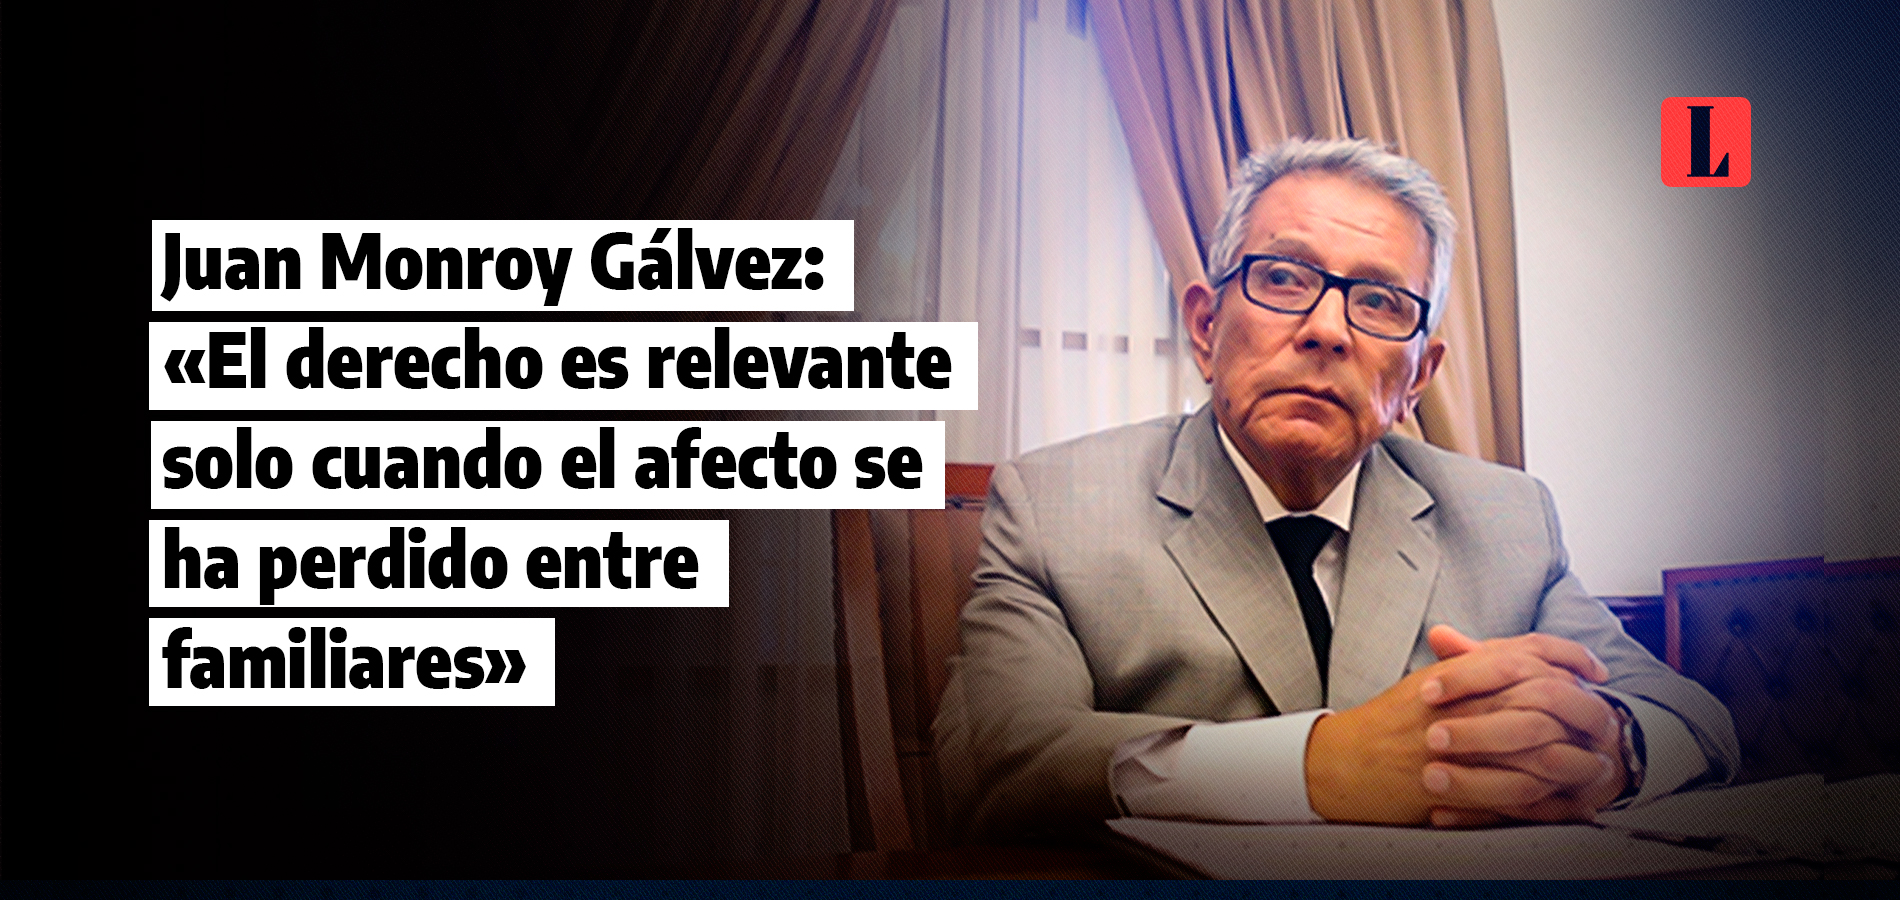 Juan Monroy Gálvez: «El derecho pasa a ser relevante solo cuando el afecto se ha perdido entre familiares»